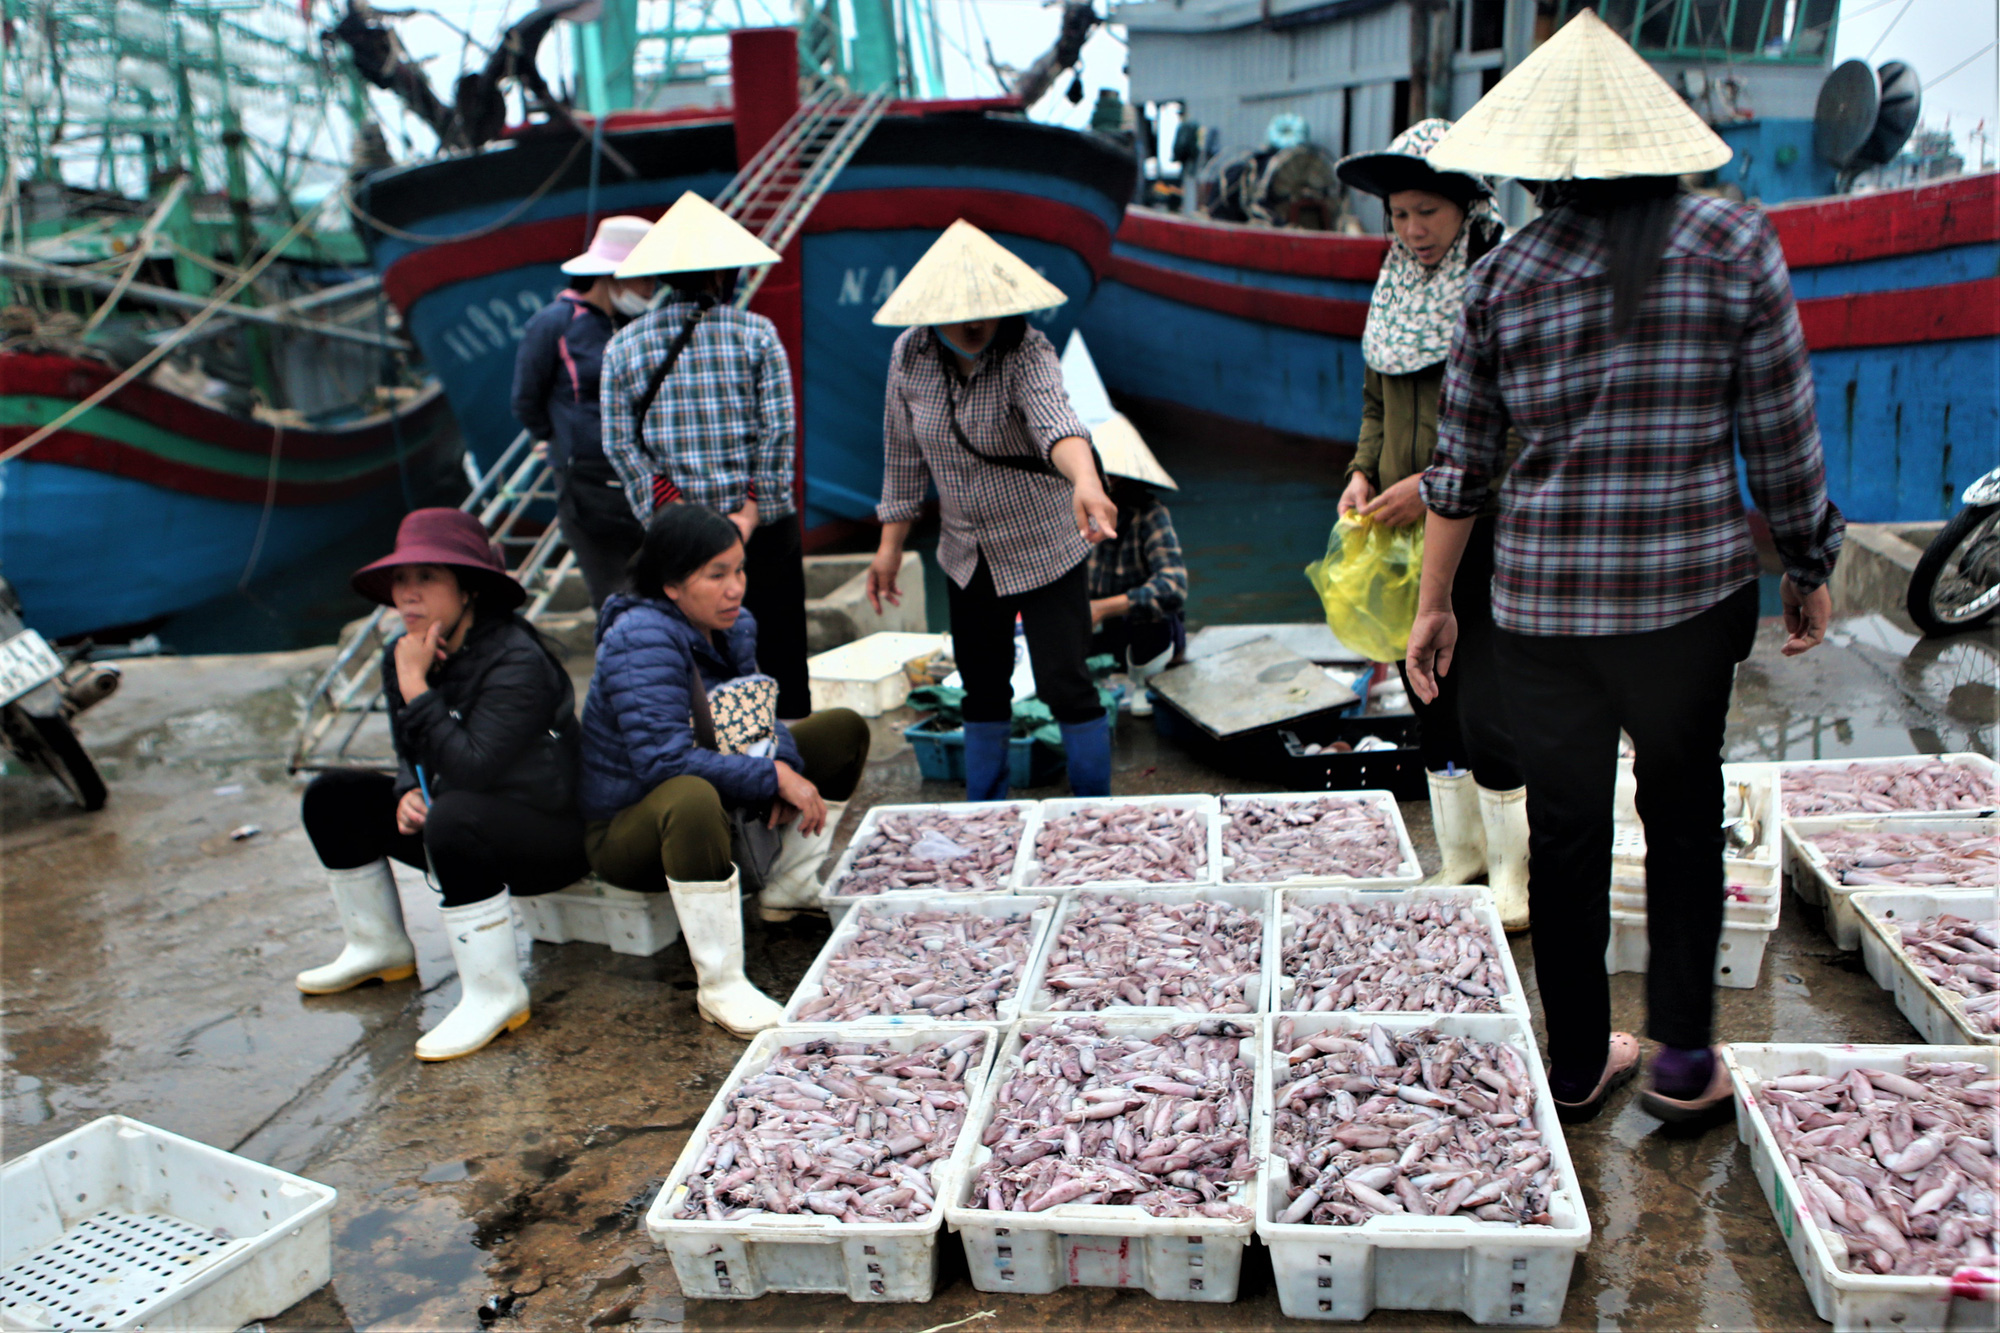 Ra khơi vài ba tiếng, ngư dân Quỳnh Nghĩa đem về cá, tôm cua, mực,... đầy ắp ằm ặp các thuyền thu cả triệu đồng - Ảnh 9.